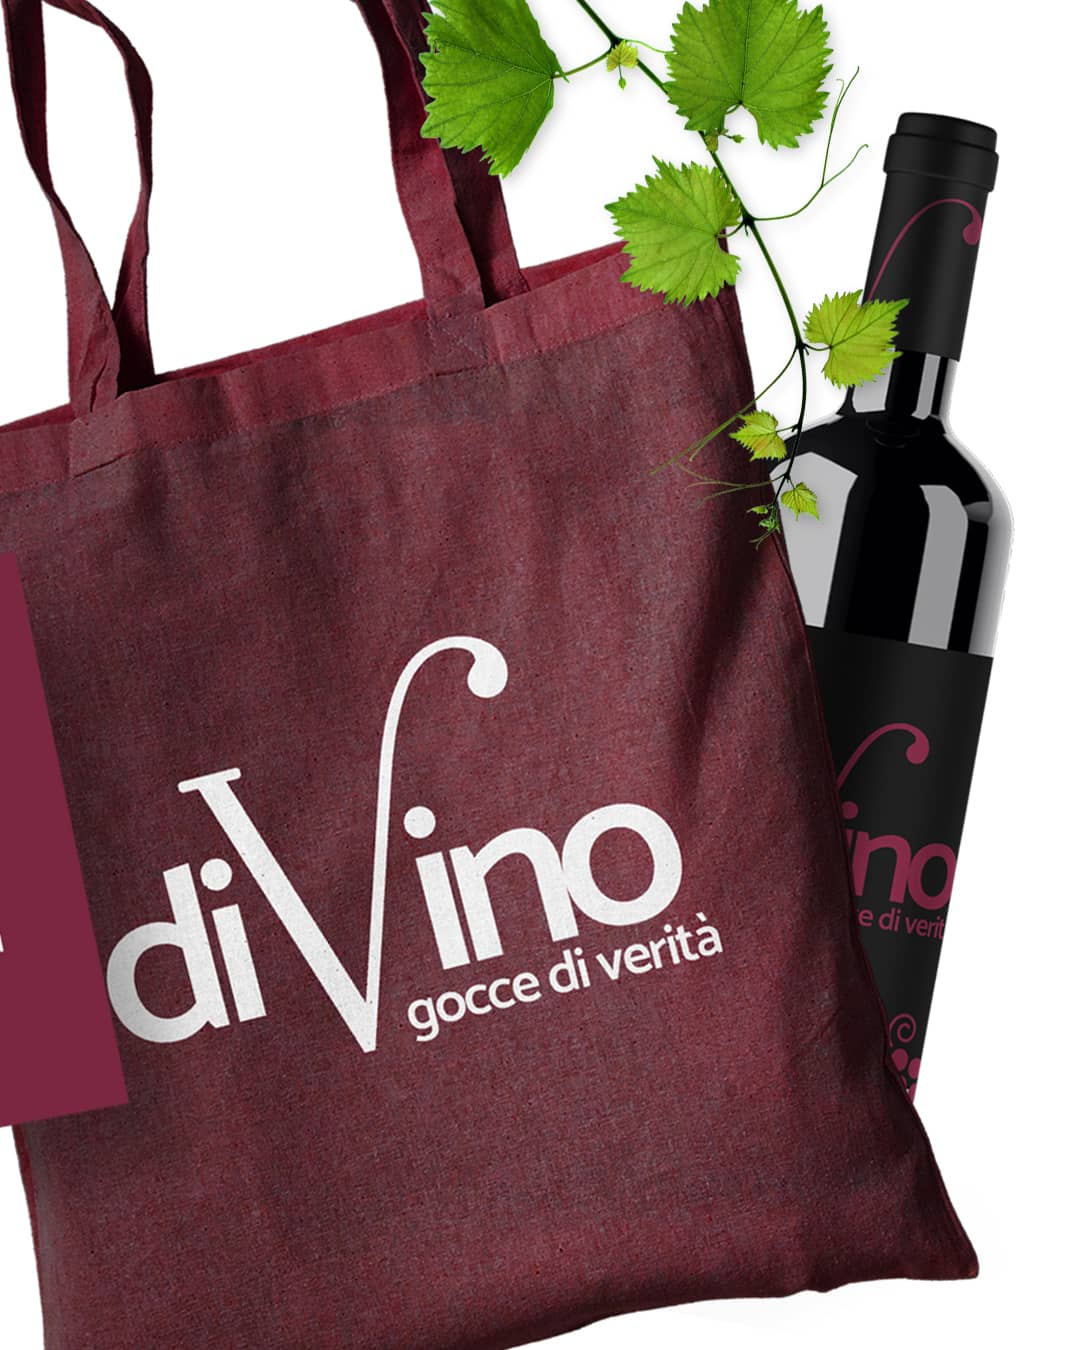 divino casa vinicola, brand design, visual design, identità visiva, sito web, logo, daniele barone